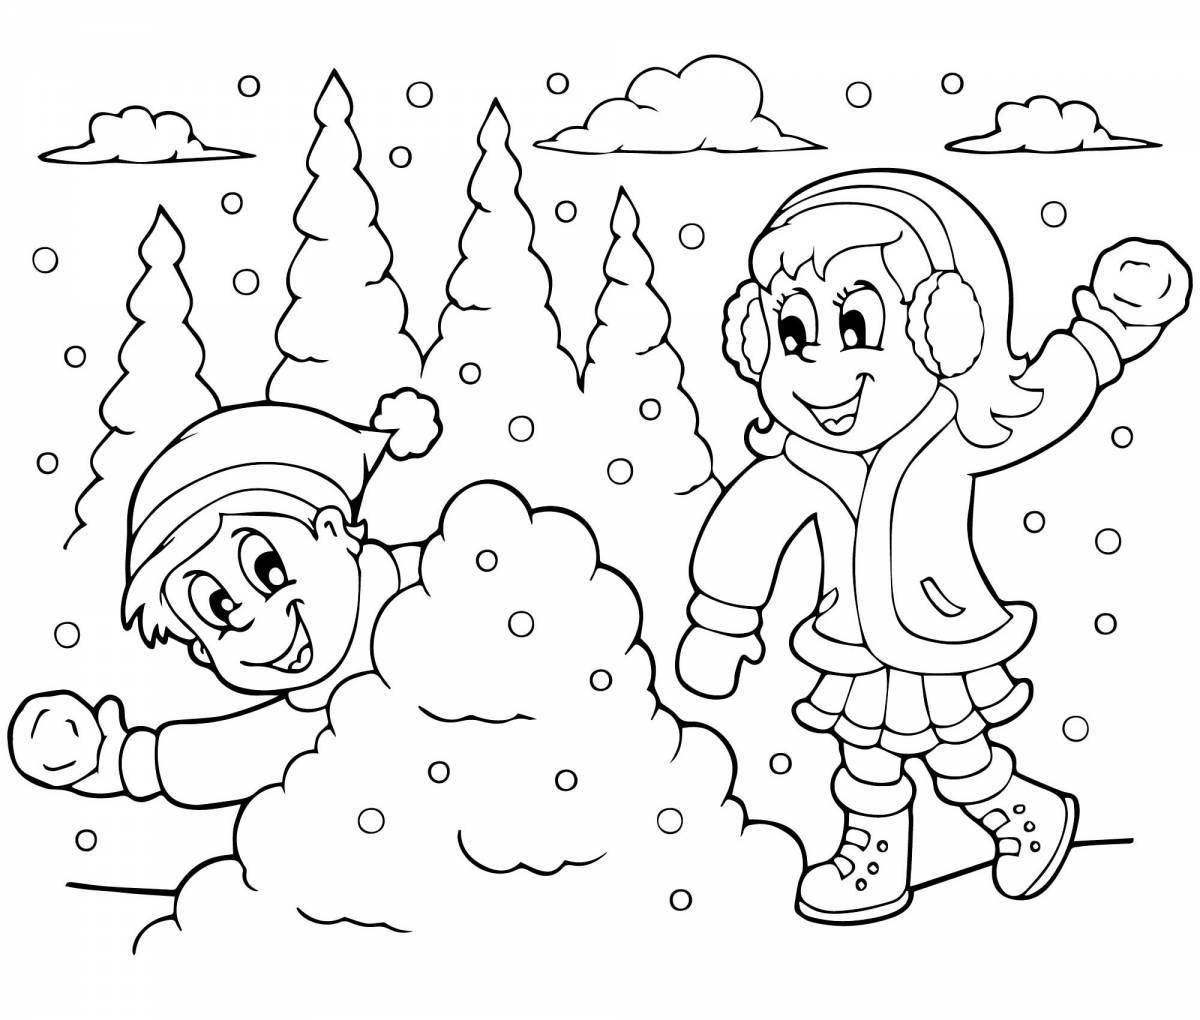 Великолепная зимняя раскраска для детей 4-5 лет